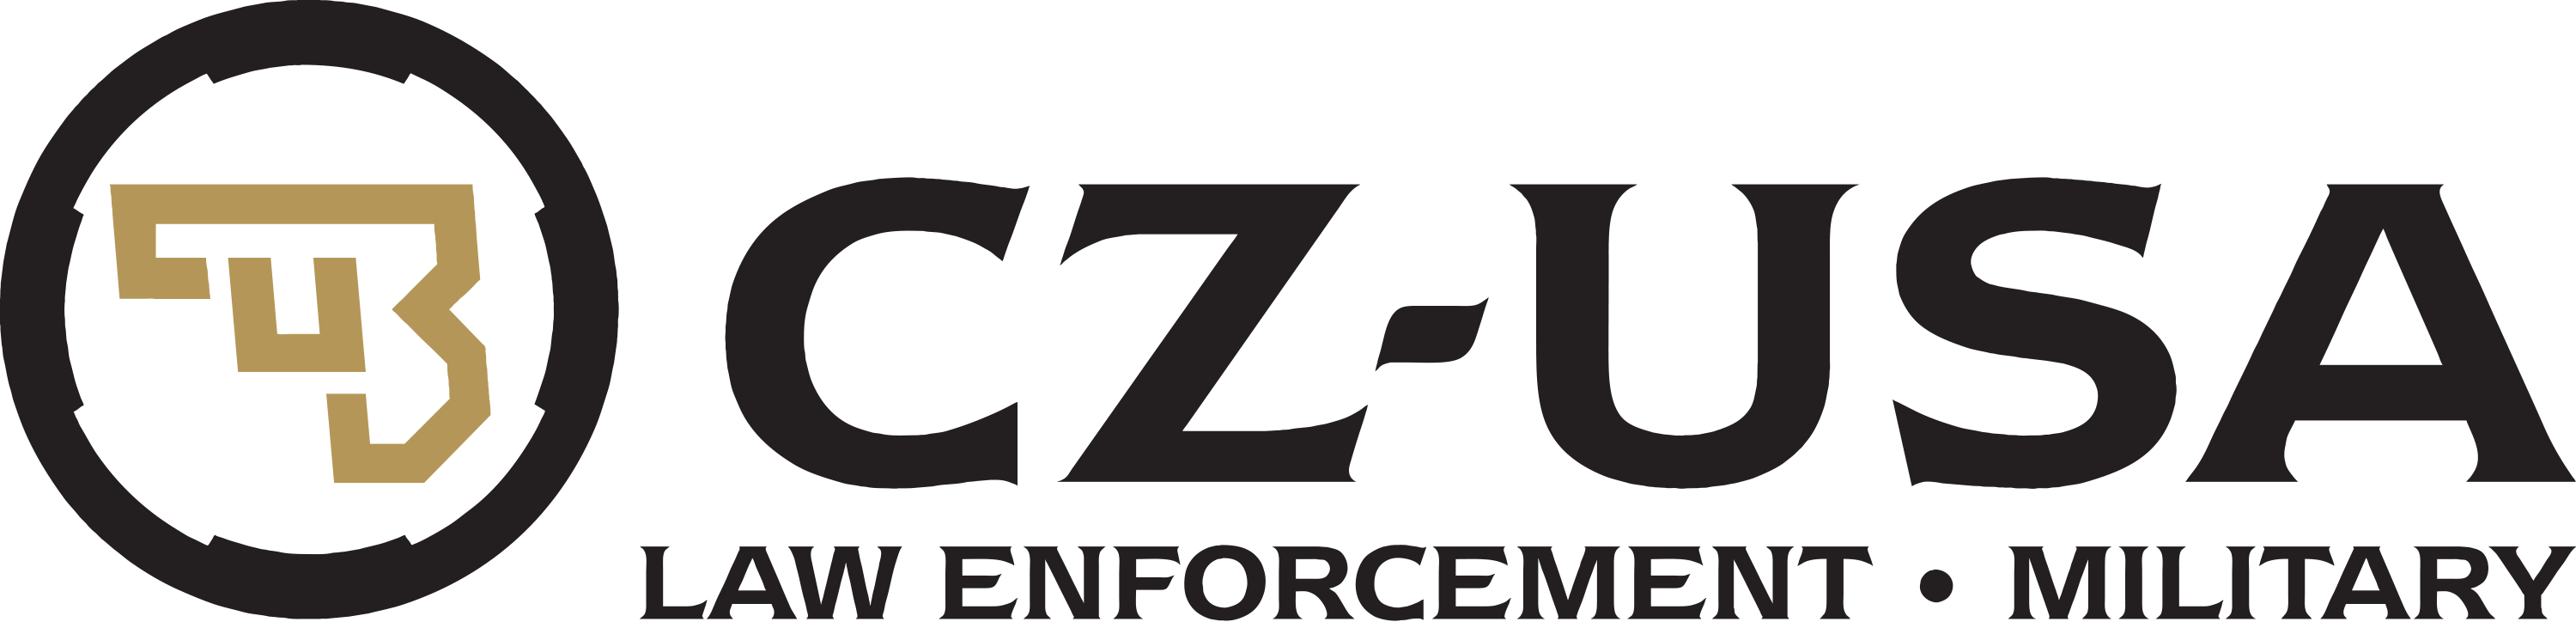 CZ Arms Logo - CZ USA LE MIL. CZ USA Law Enforcement & Military Program